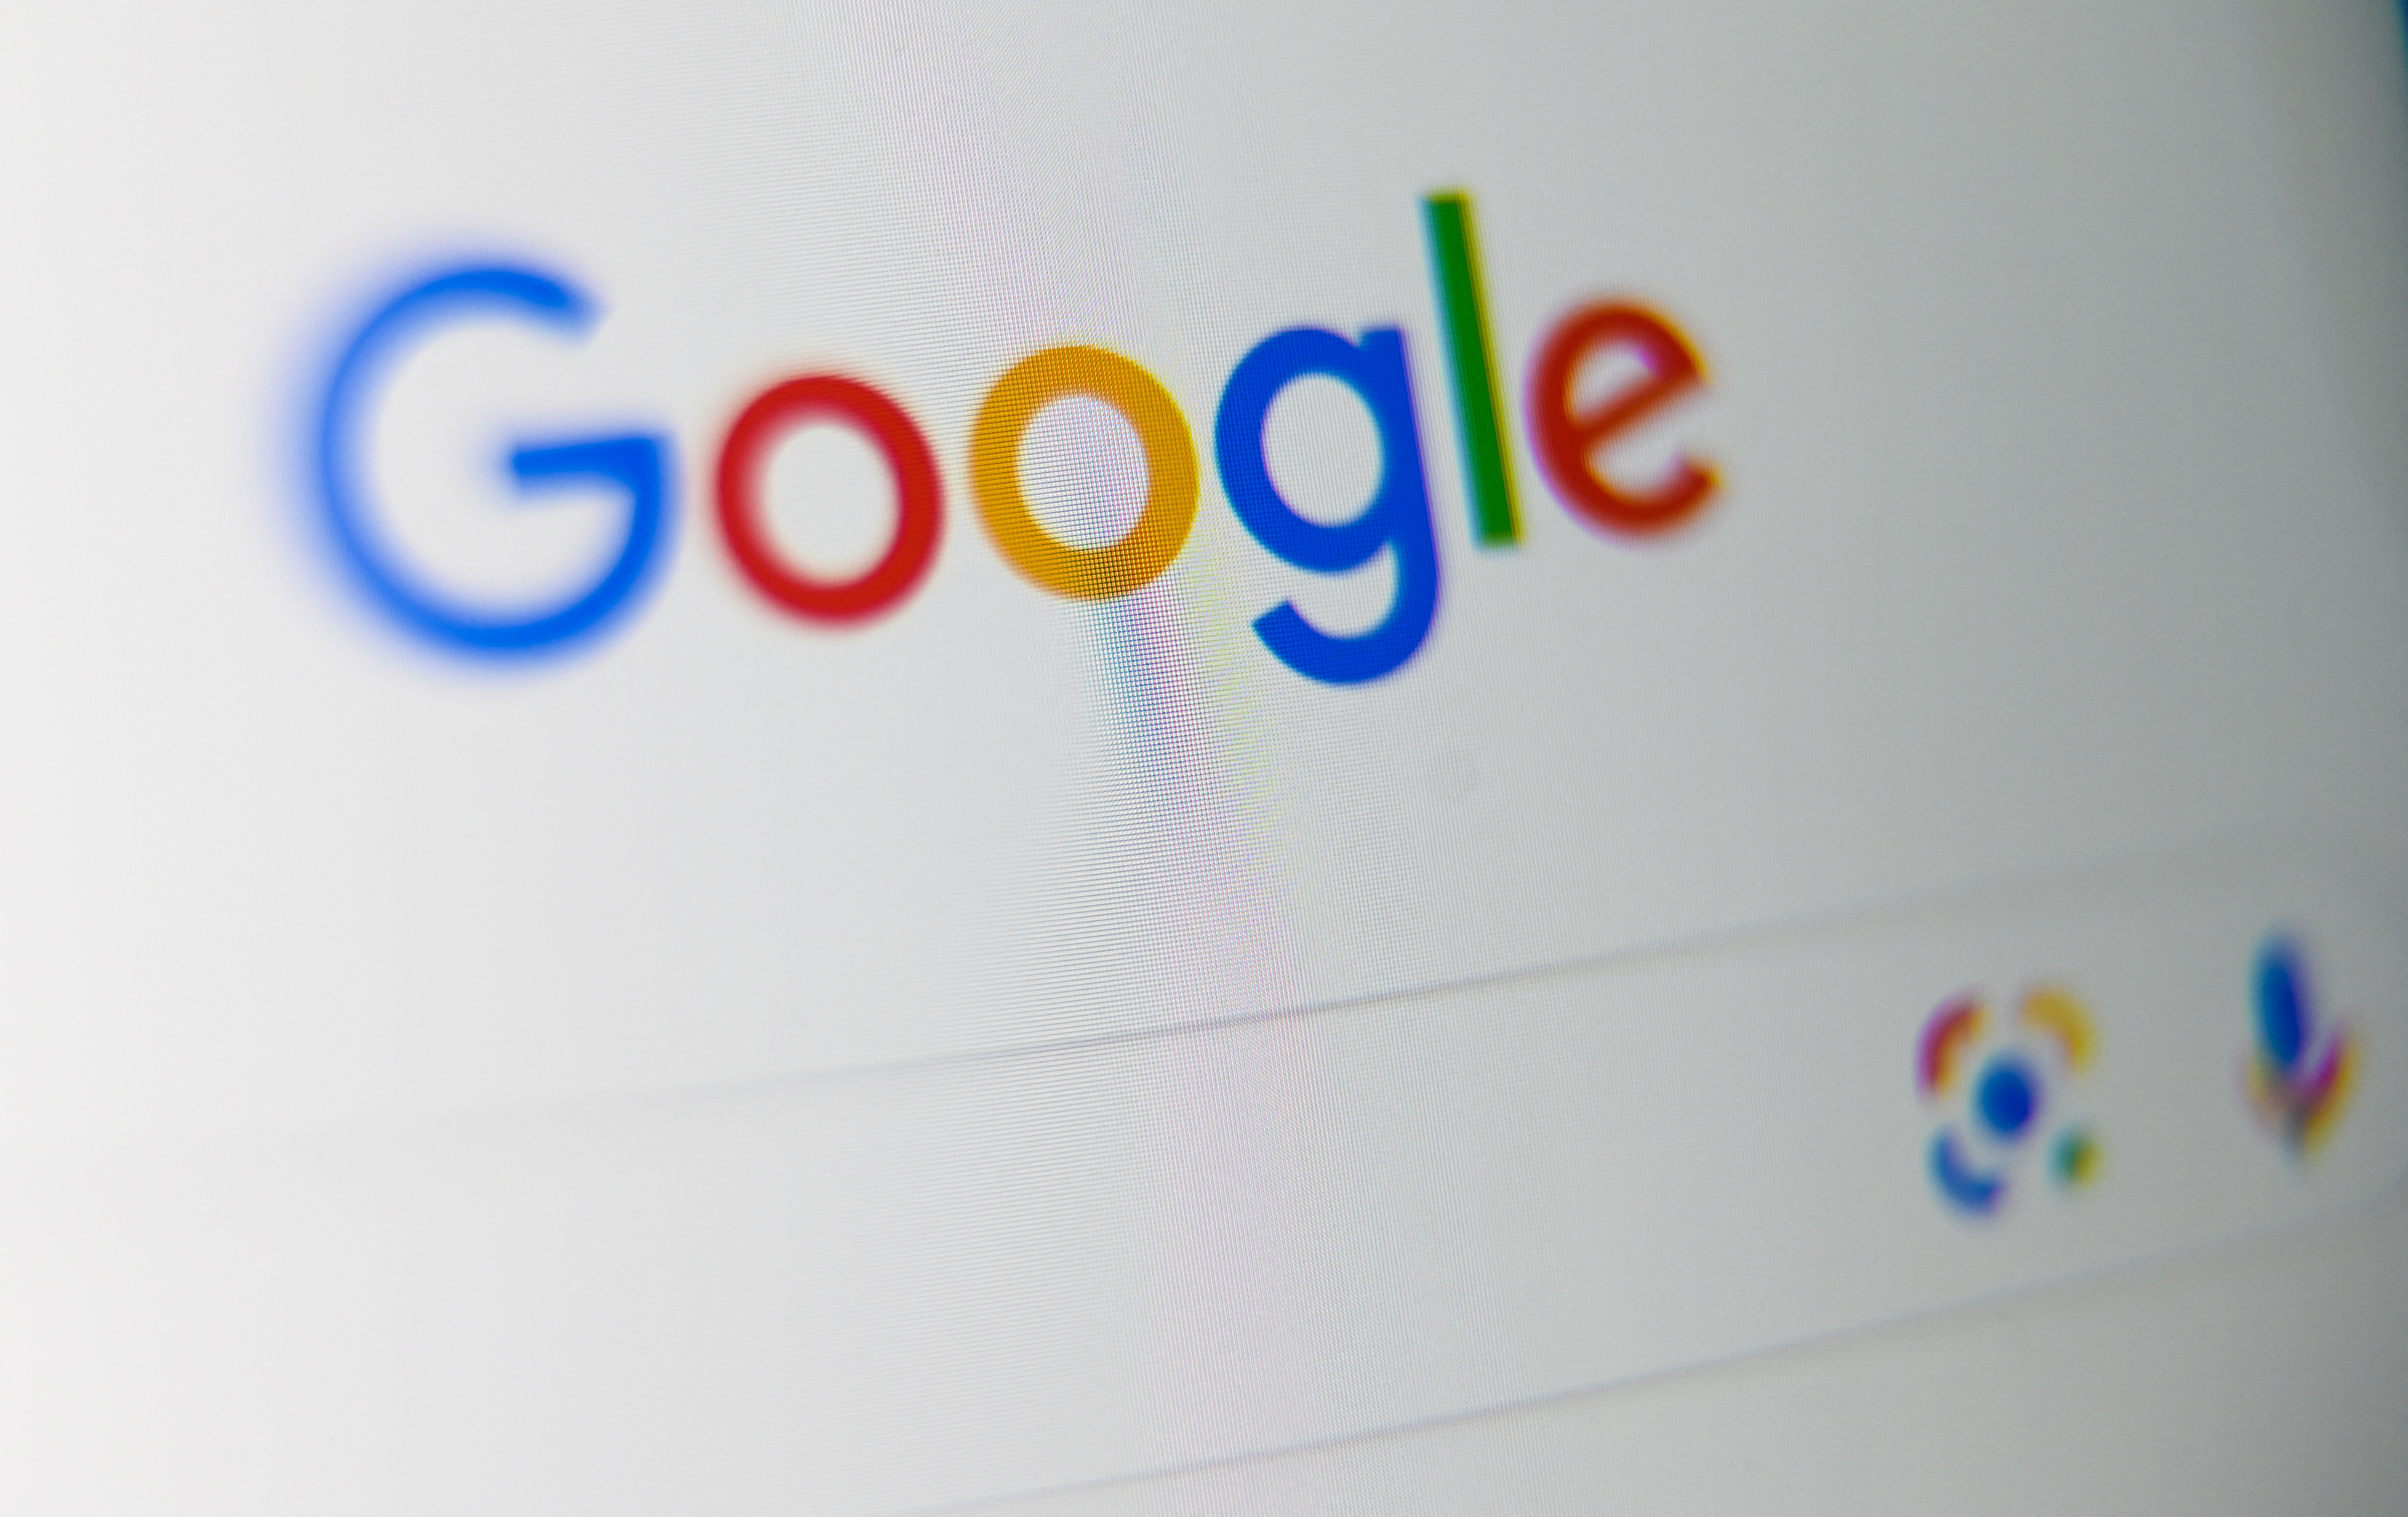 Franciaországban 500 millió euróra büntették a Google-t, mert szerzői jogot sértettek